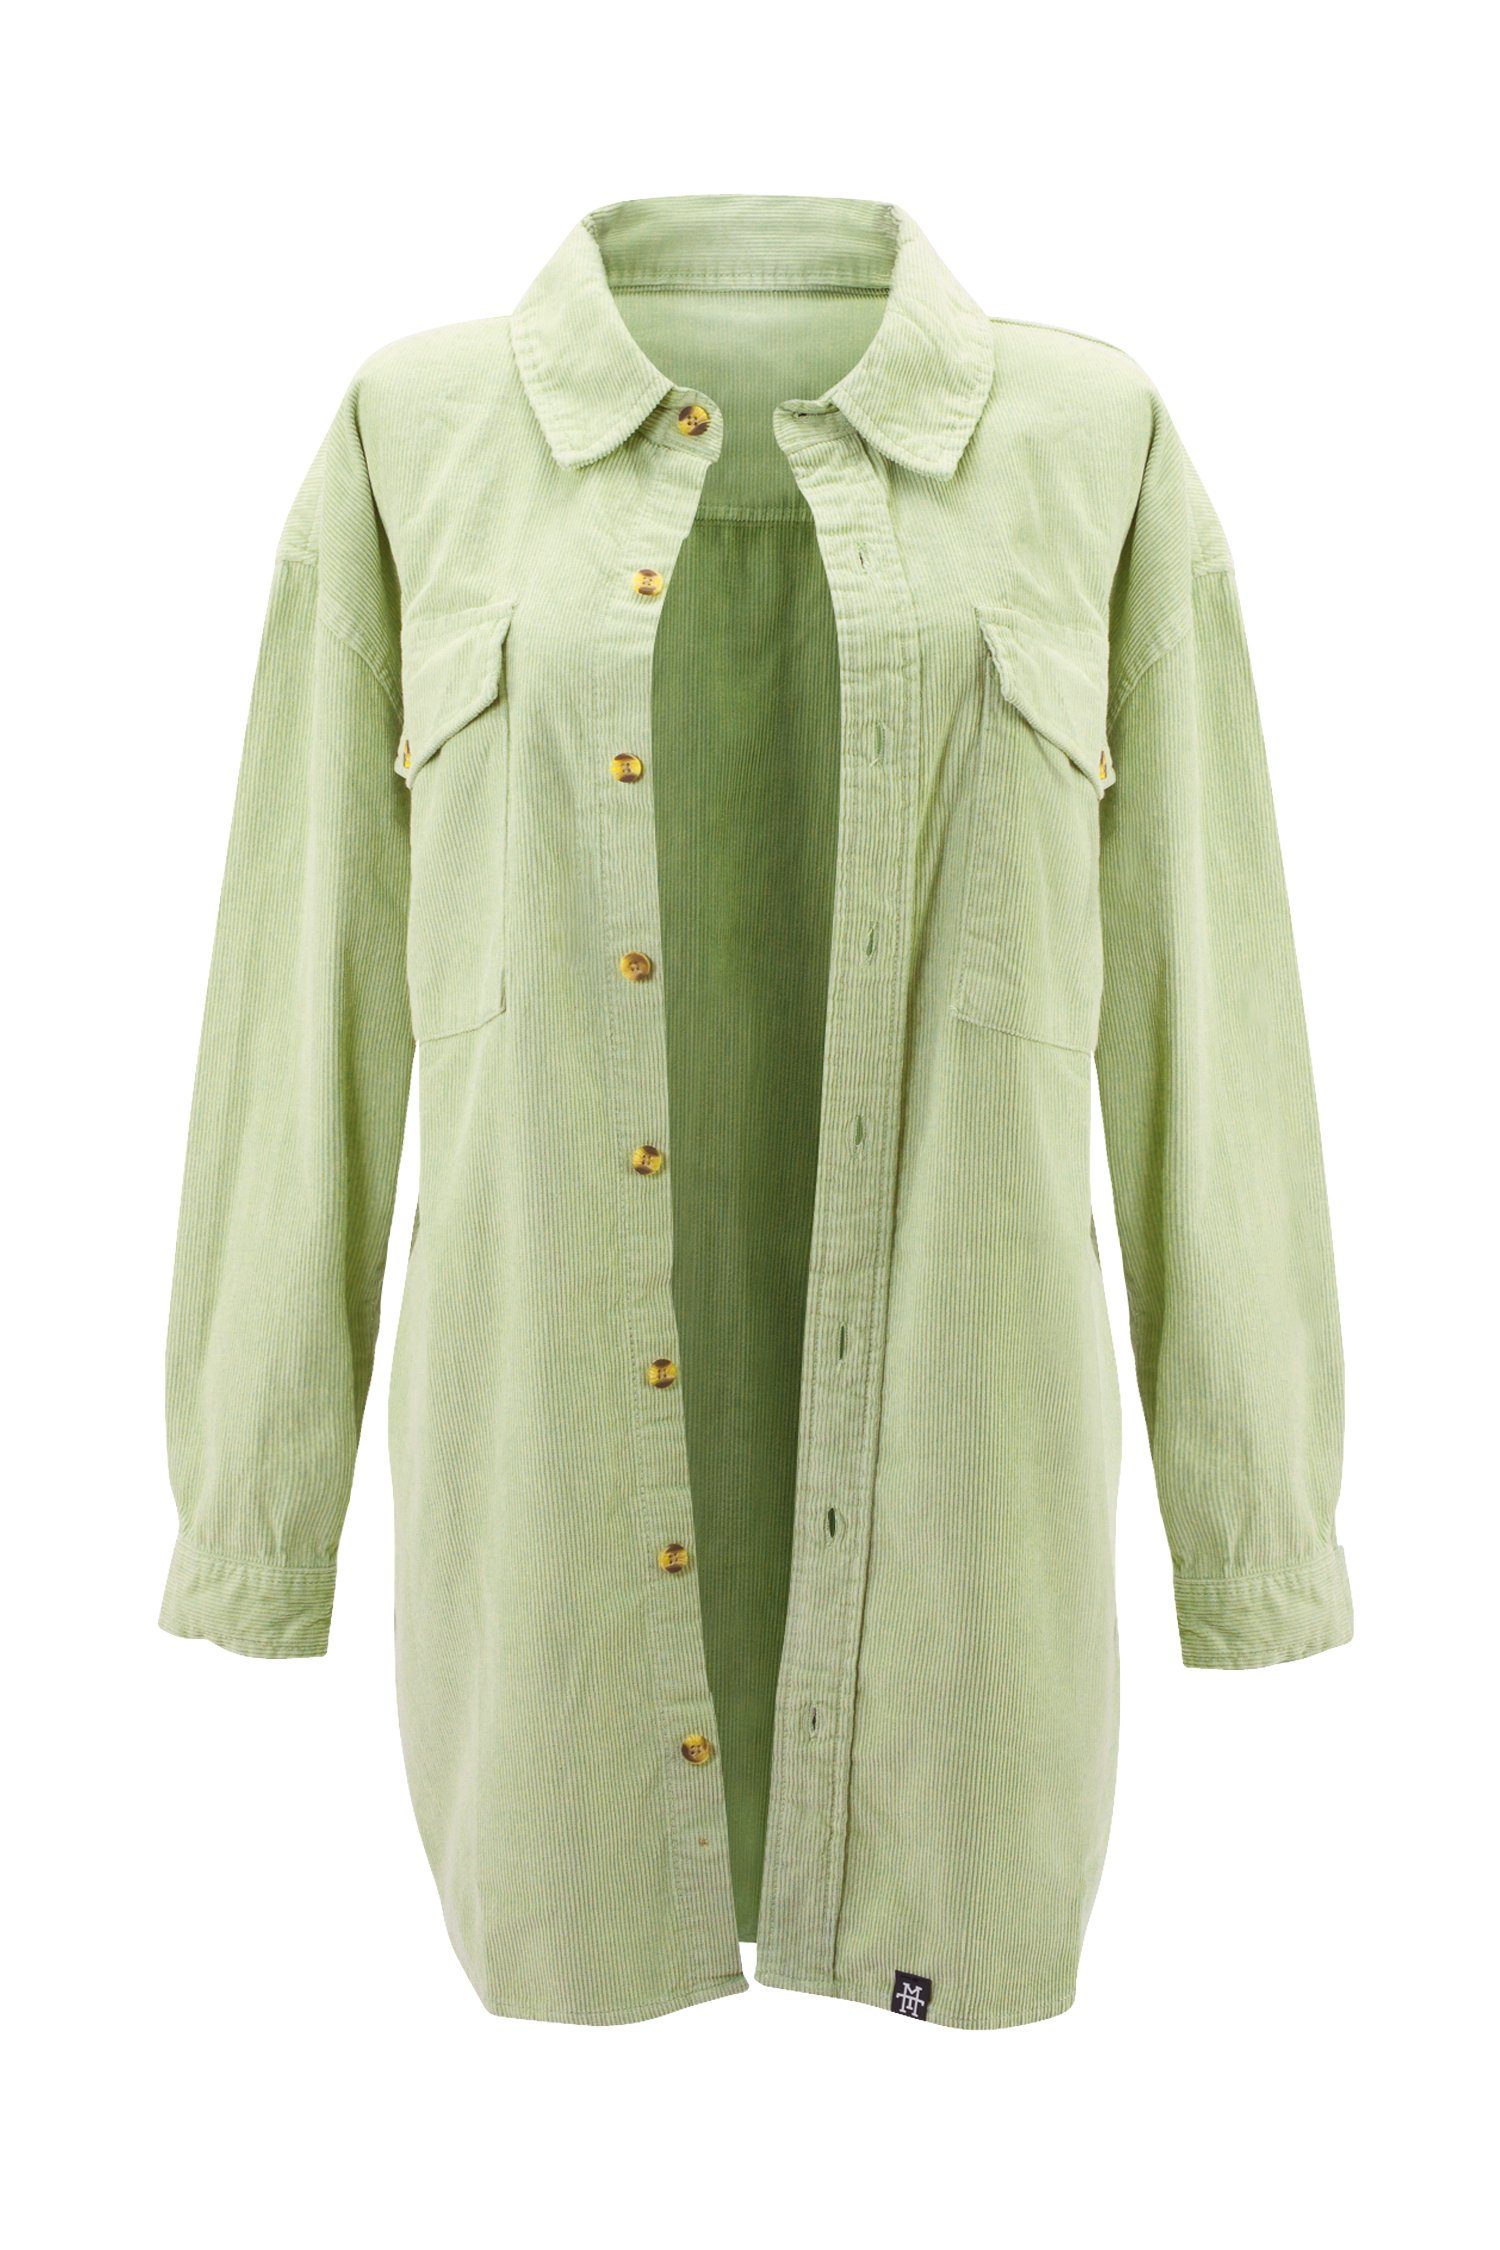 Manufaktur13 Cordjacke »M13 Oversize Cord Jacket - Hemdjacke, Damen / Frauen«  100% Baumwolle online kaufen | OTTO